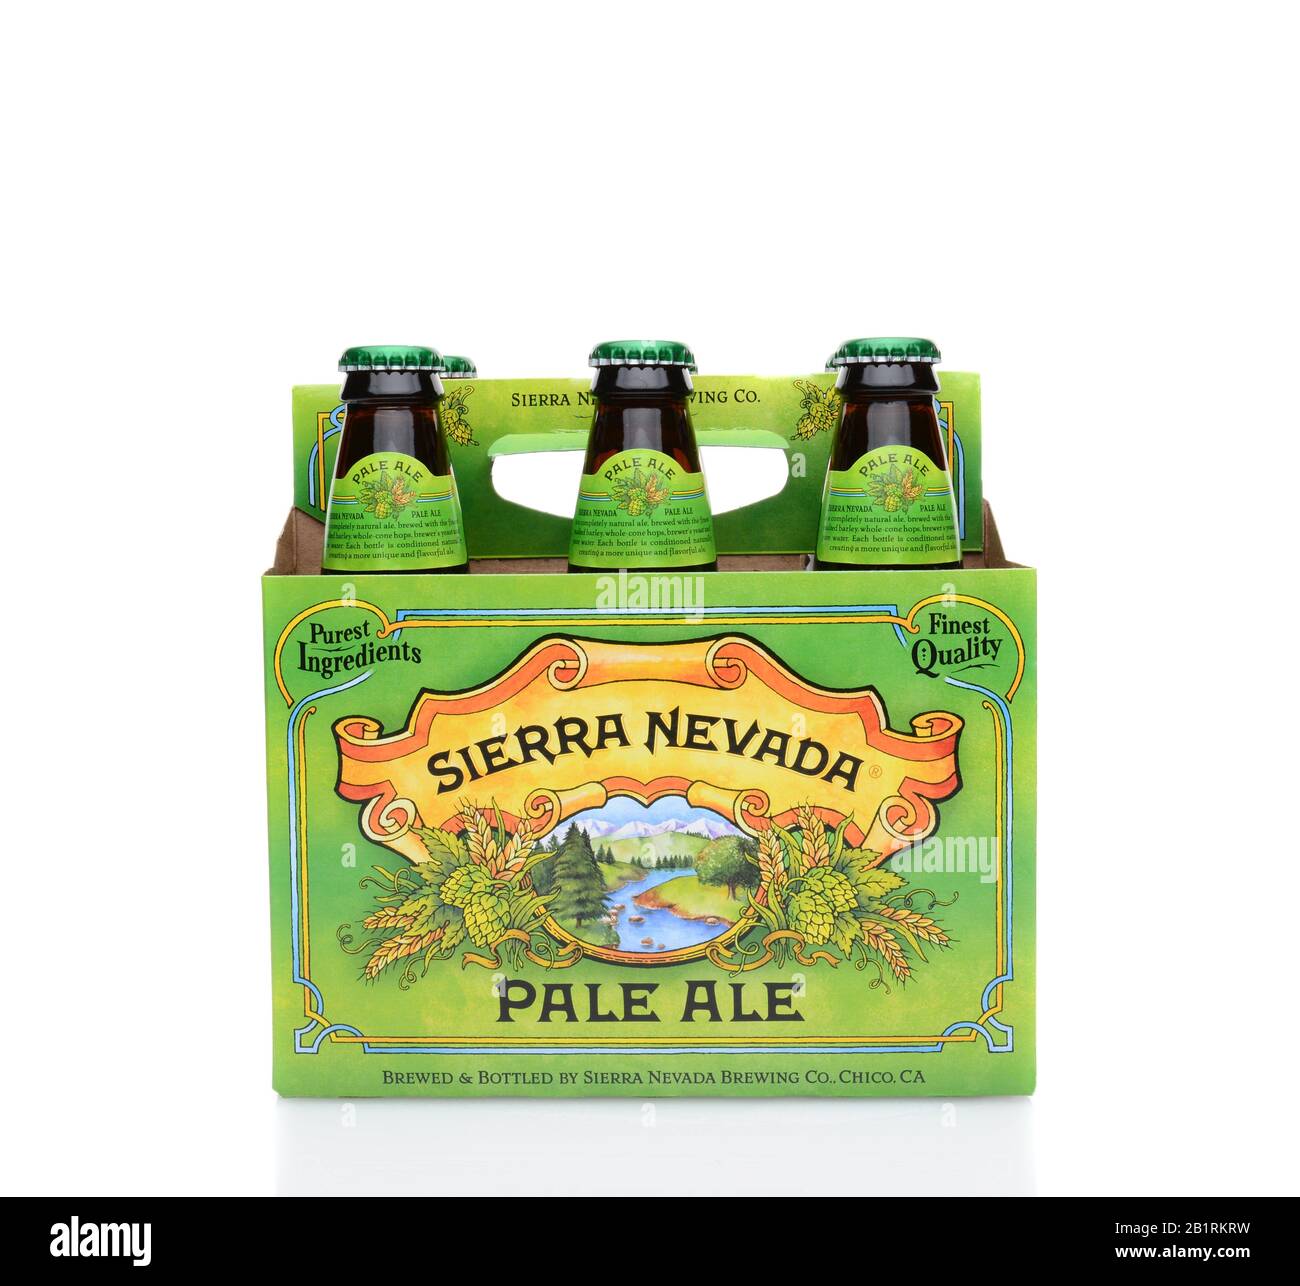 Irvine, CA - 25 DE MAYO de 2014: Un paquete de 6 Pale Ale de Sierra Nevada. Sierra Nevada Brewing Co. Fue establecida en 1980 por los cerveceros de casa en Chico, California, Foto de stock